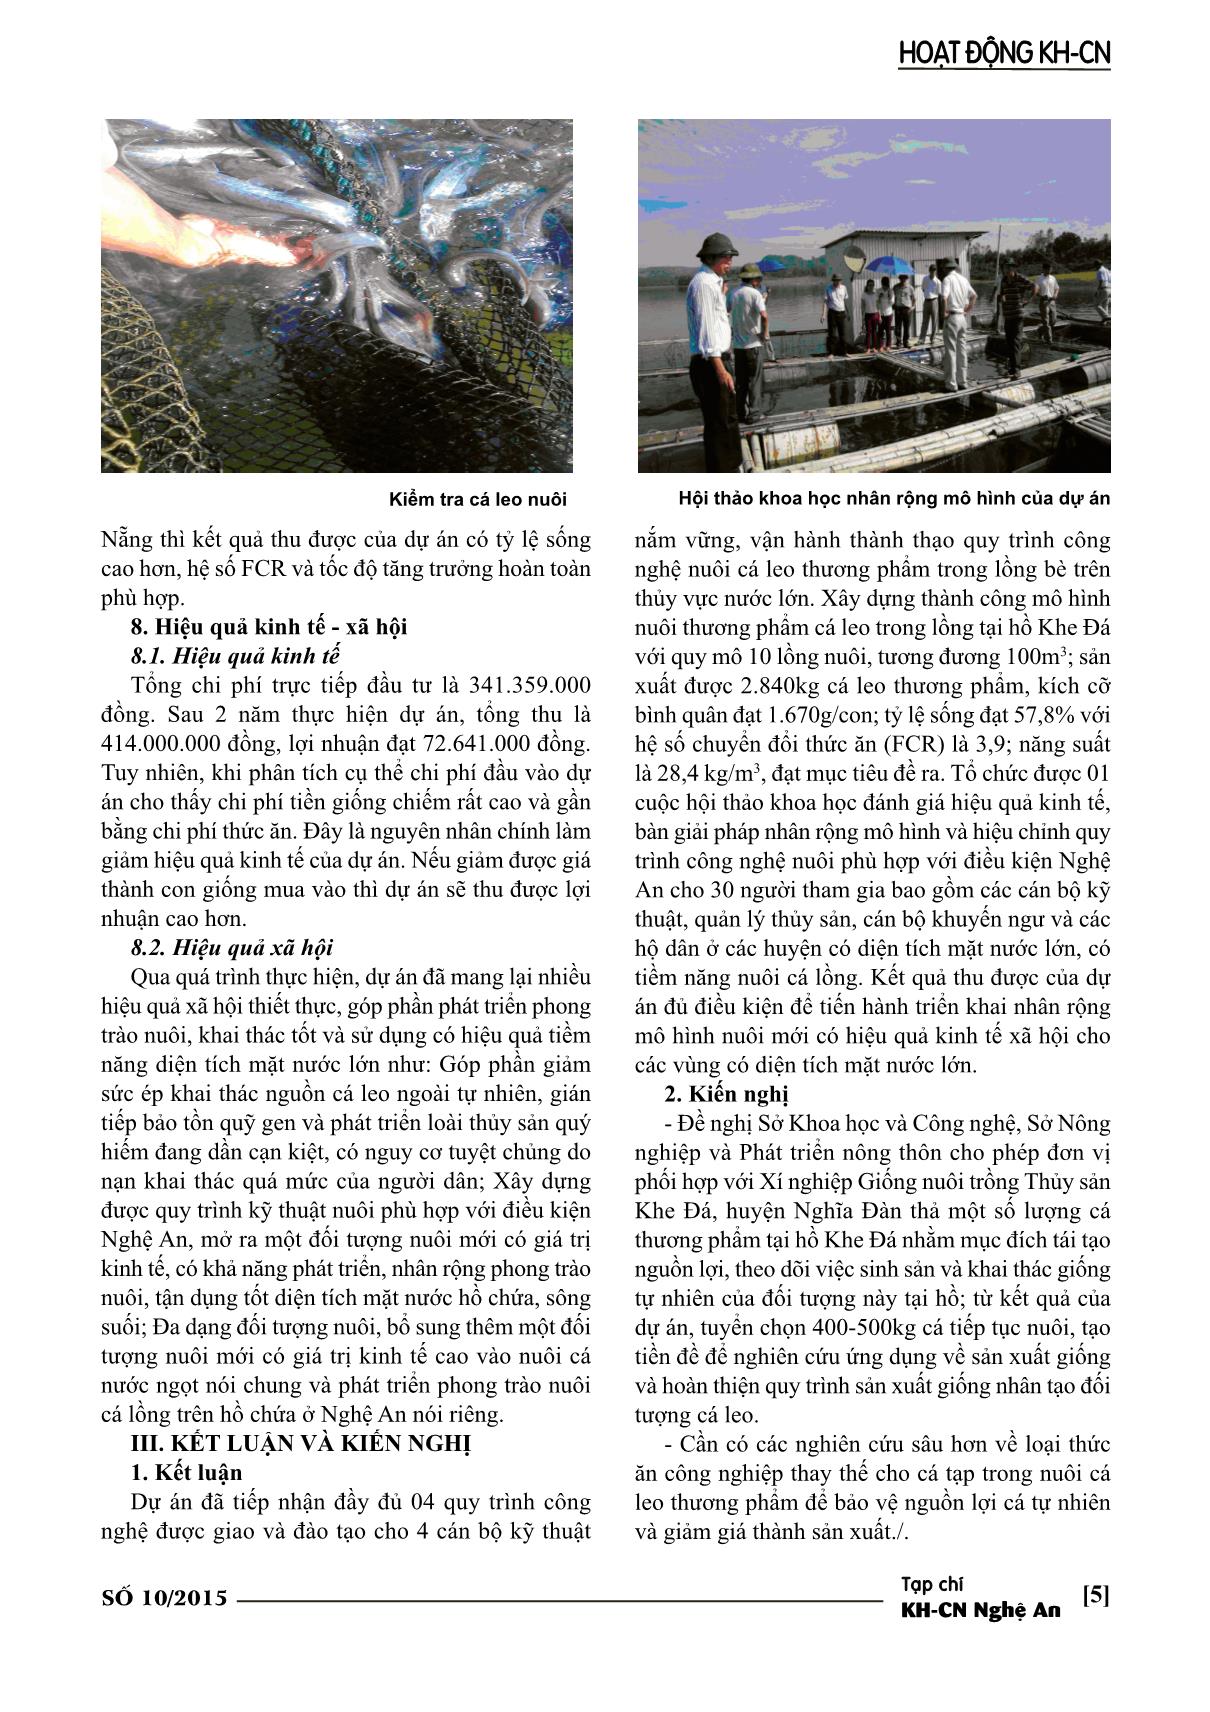 Mô hình nuôi thương phẩm cá leo trong lồng bè trên thủy vực lớn tại nghệ An trang 5